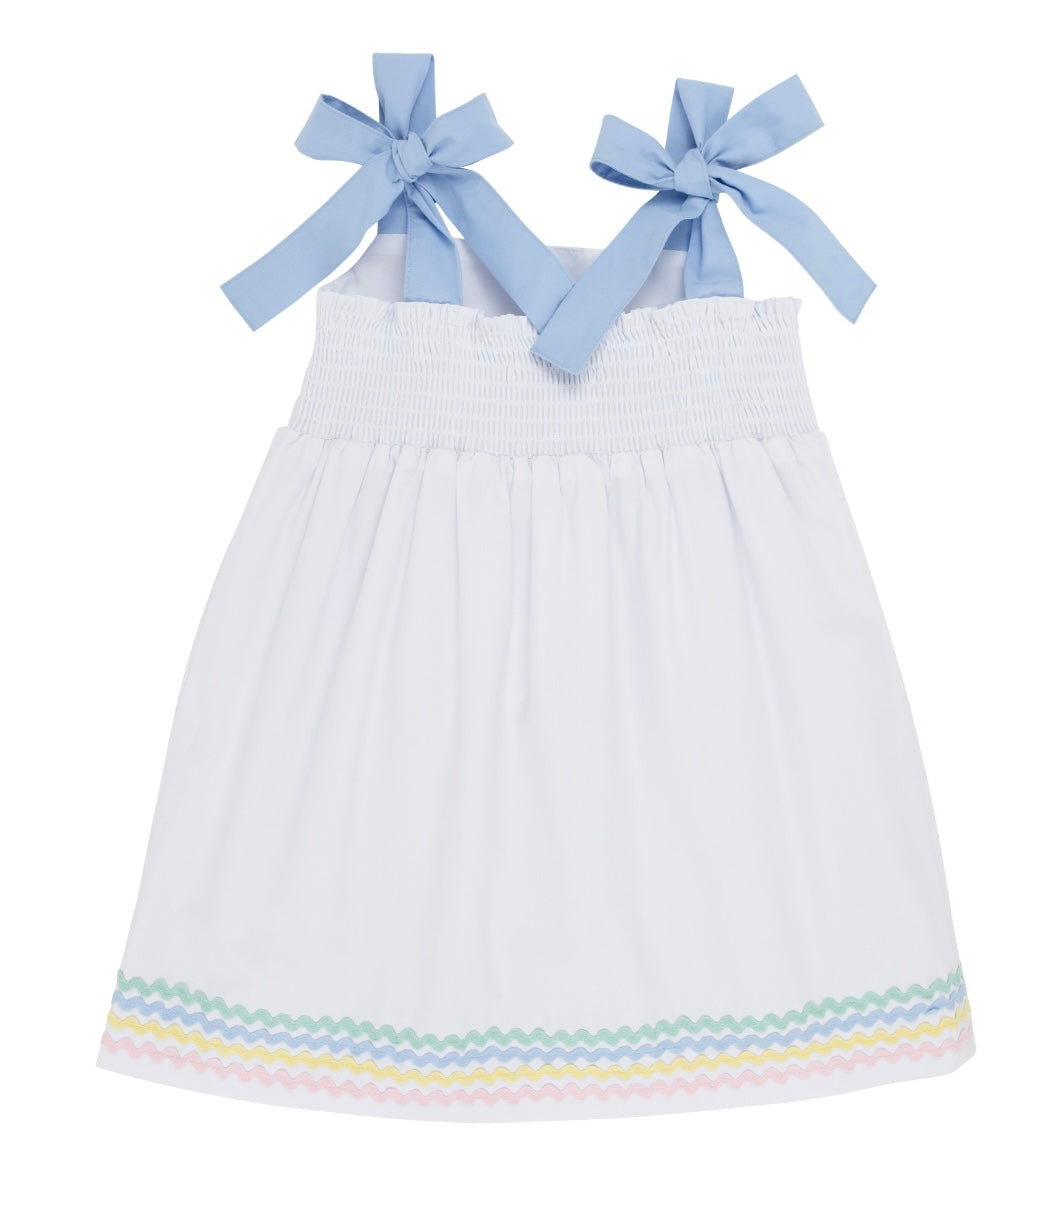 Macie Mini Dress - Worth Avenue White/Multicolor Ric Rac